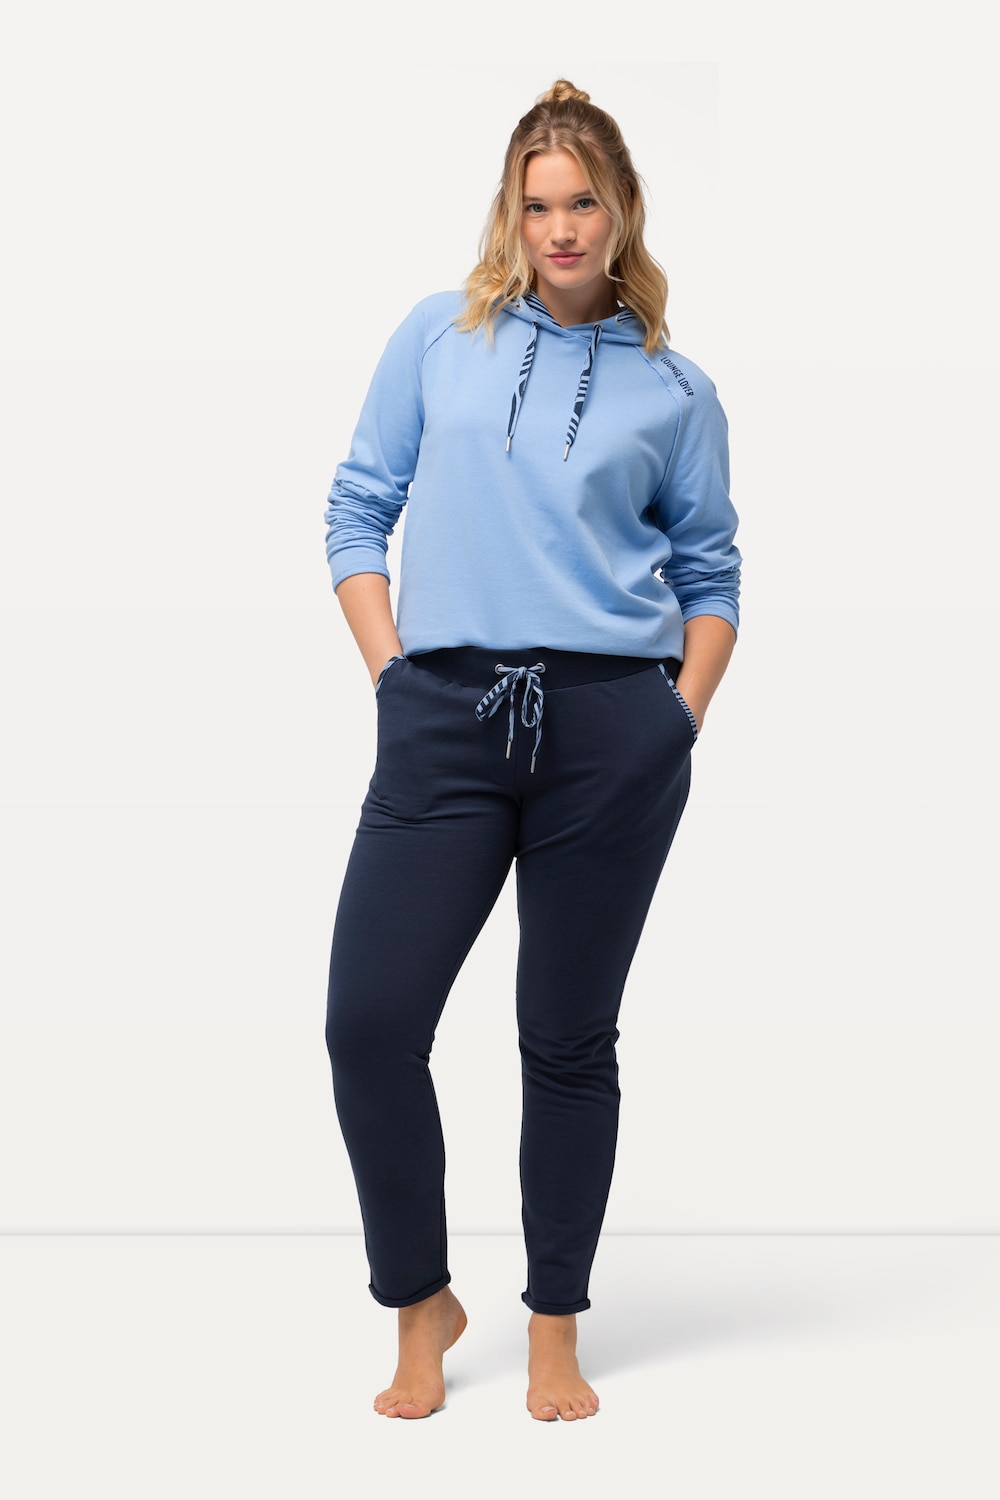 Grote Maten Loungewear broek, Dames, blauw, Maat: 46/48, Katoen/Polyester, Ulla Popken